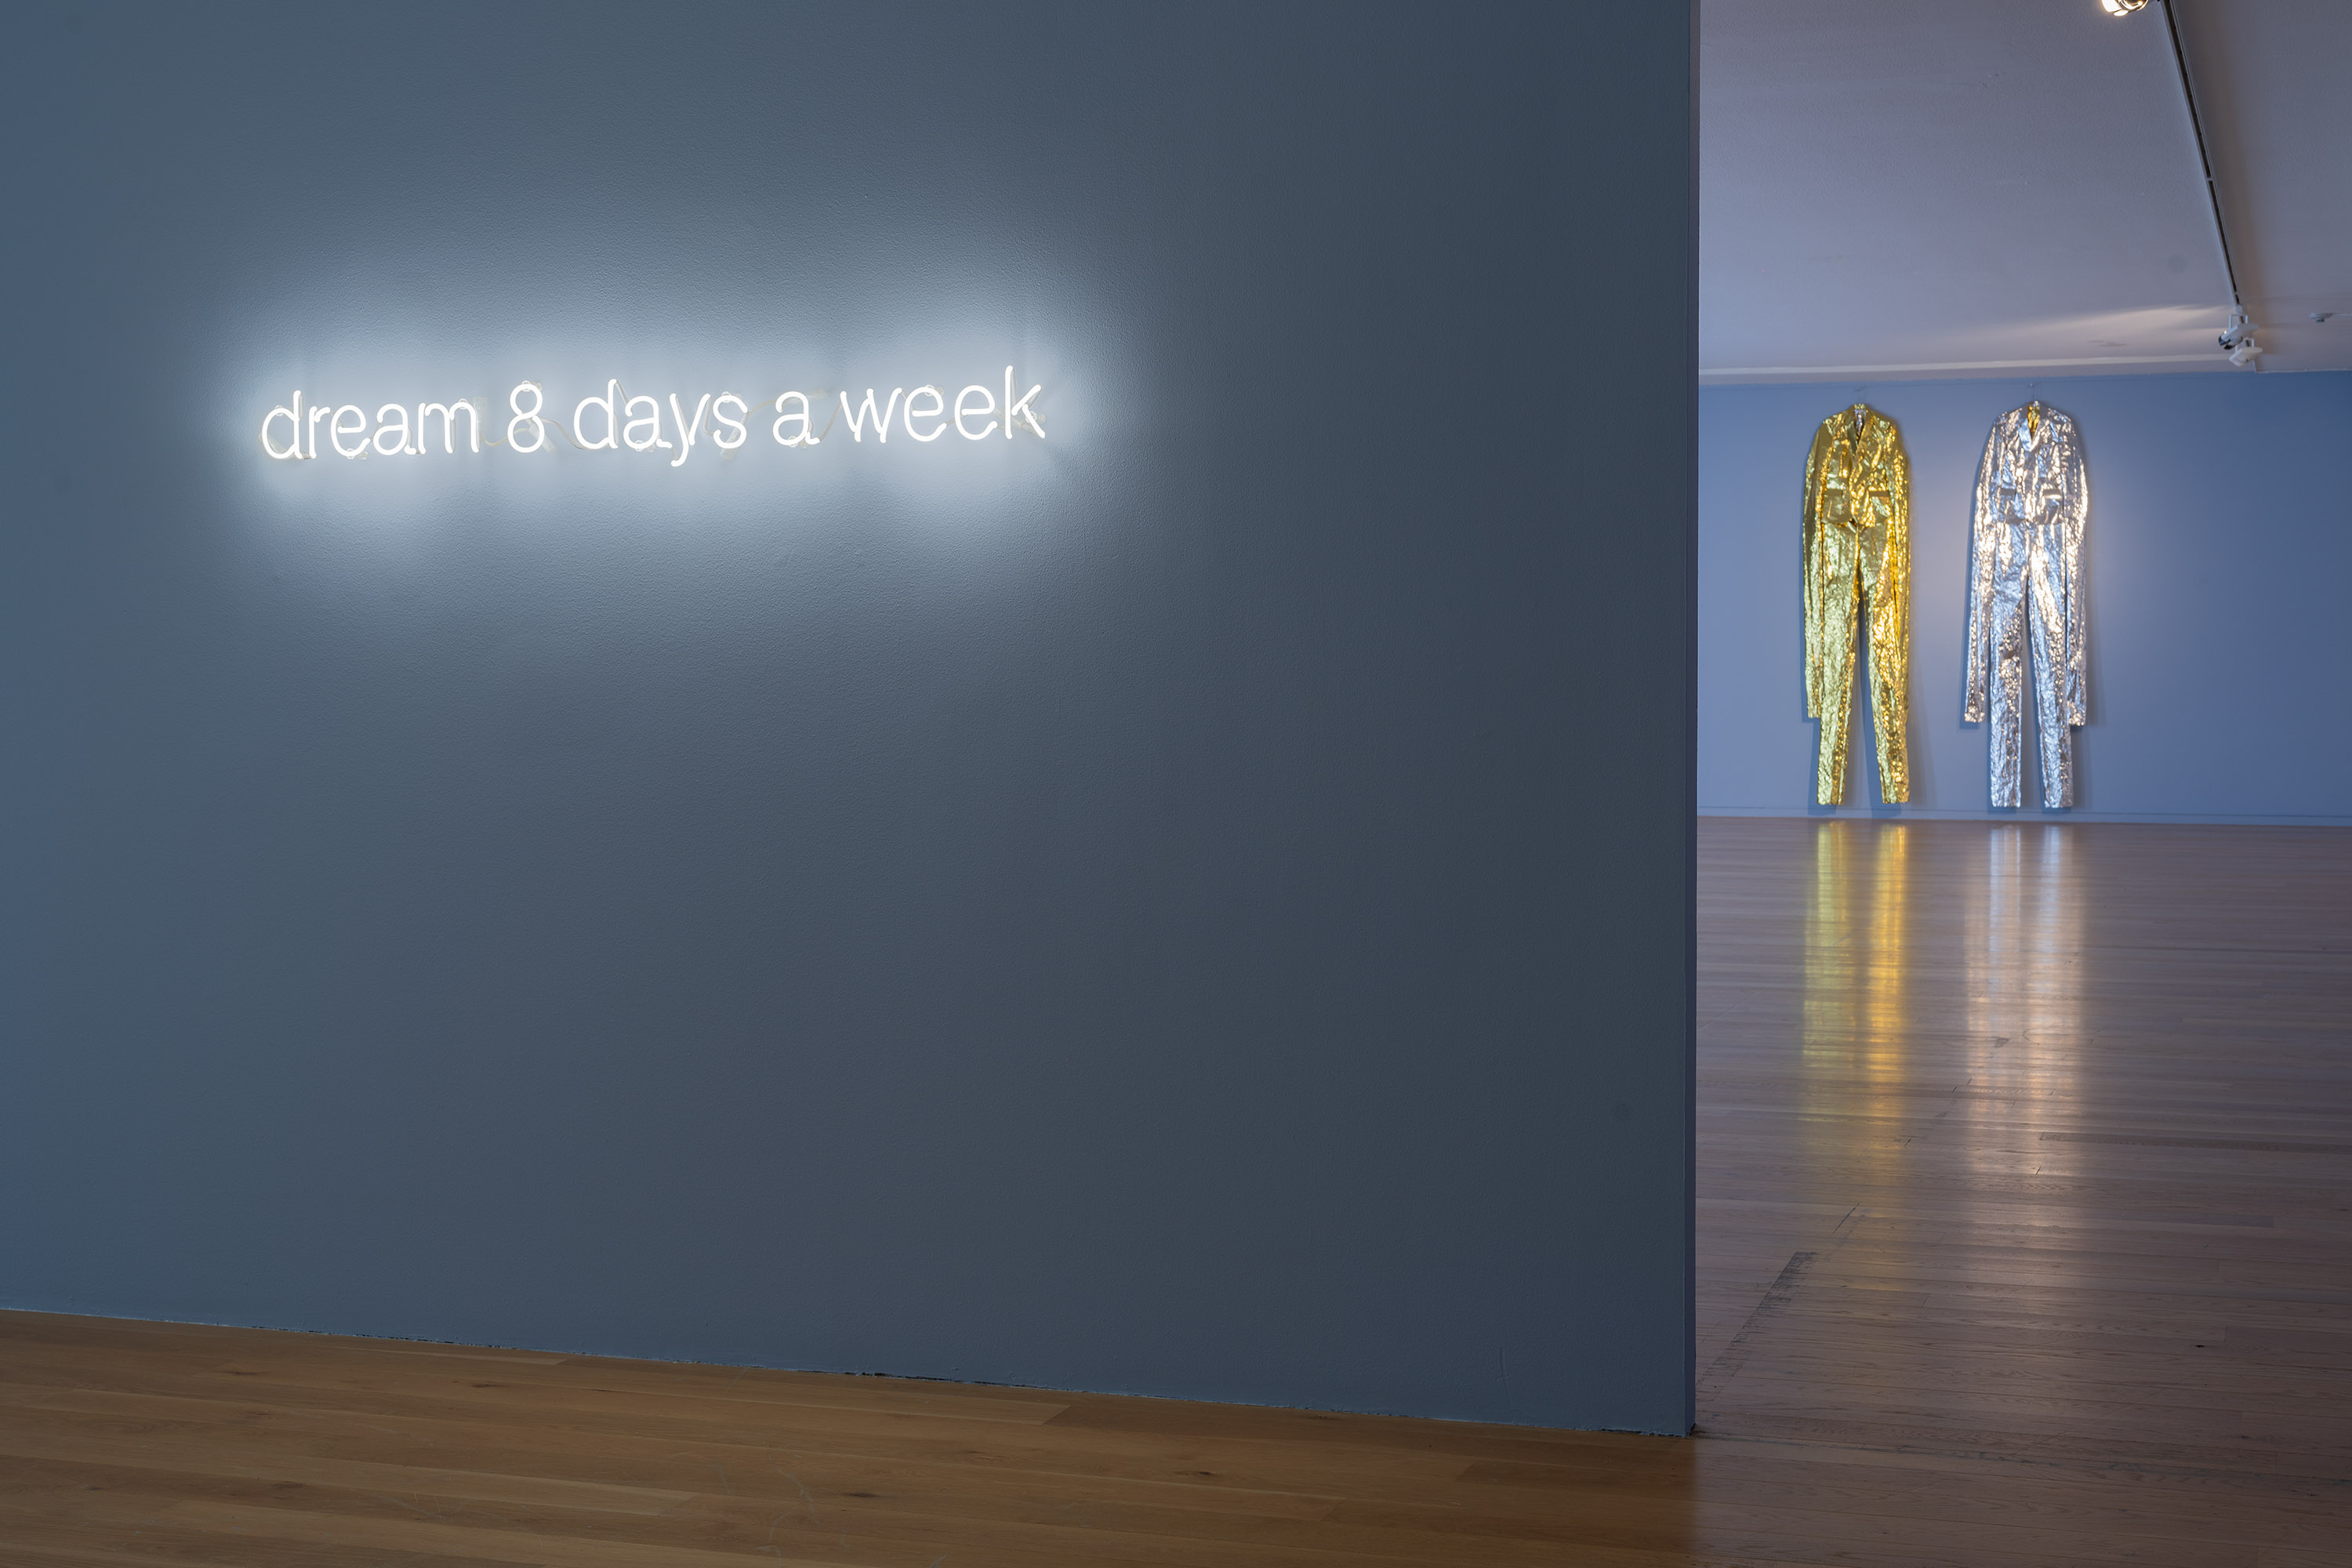 Neonskylt med texten "dream 8 days a week".